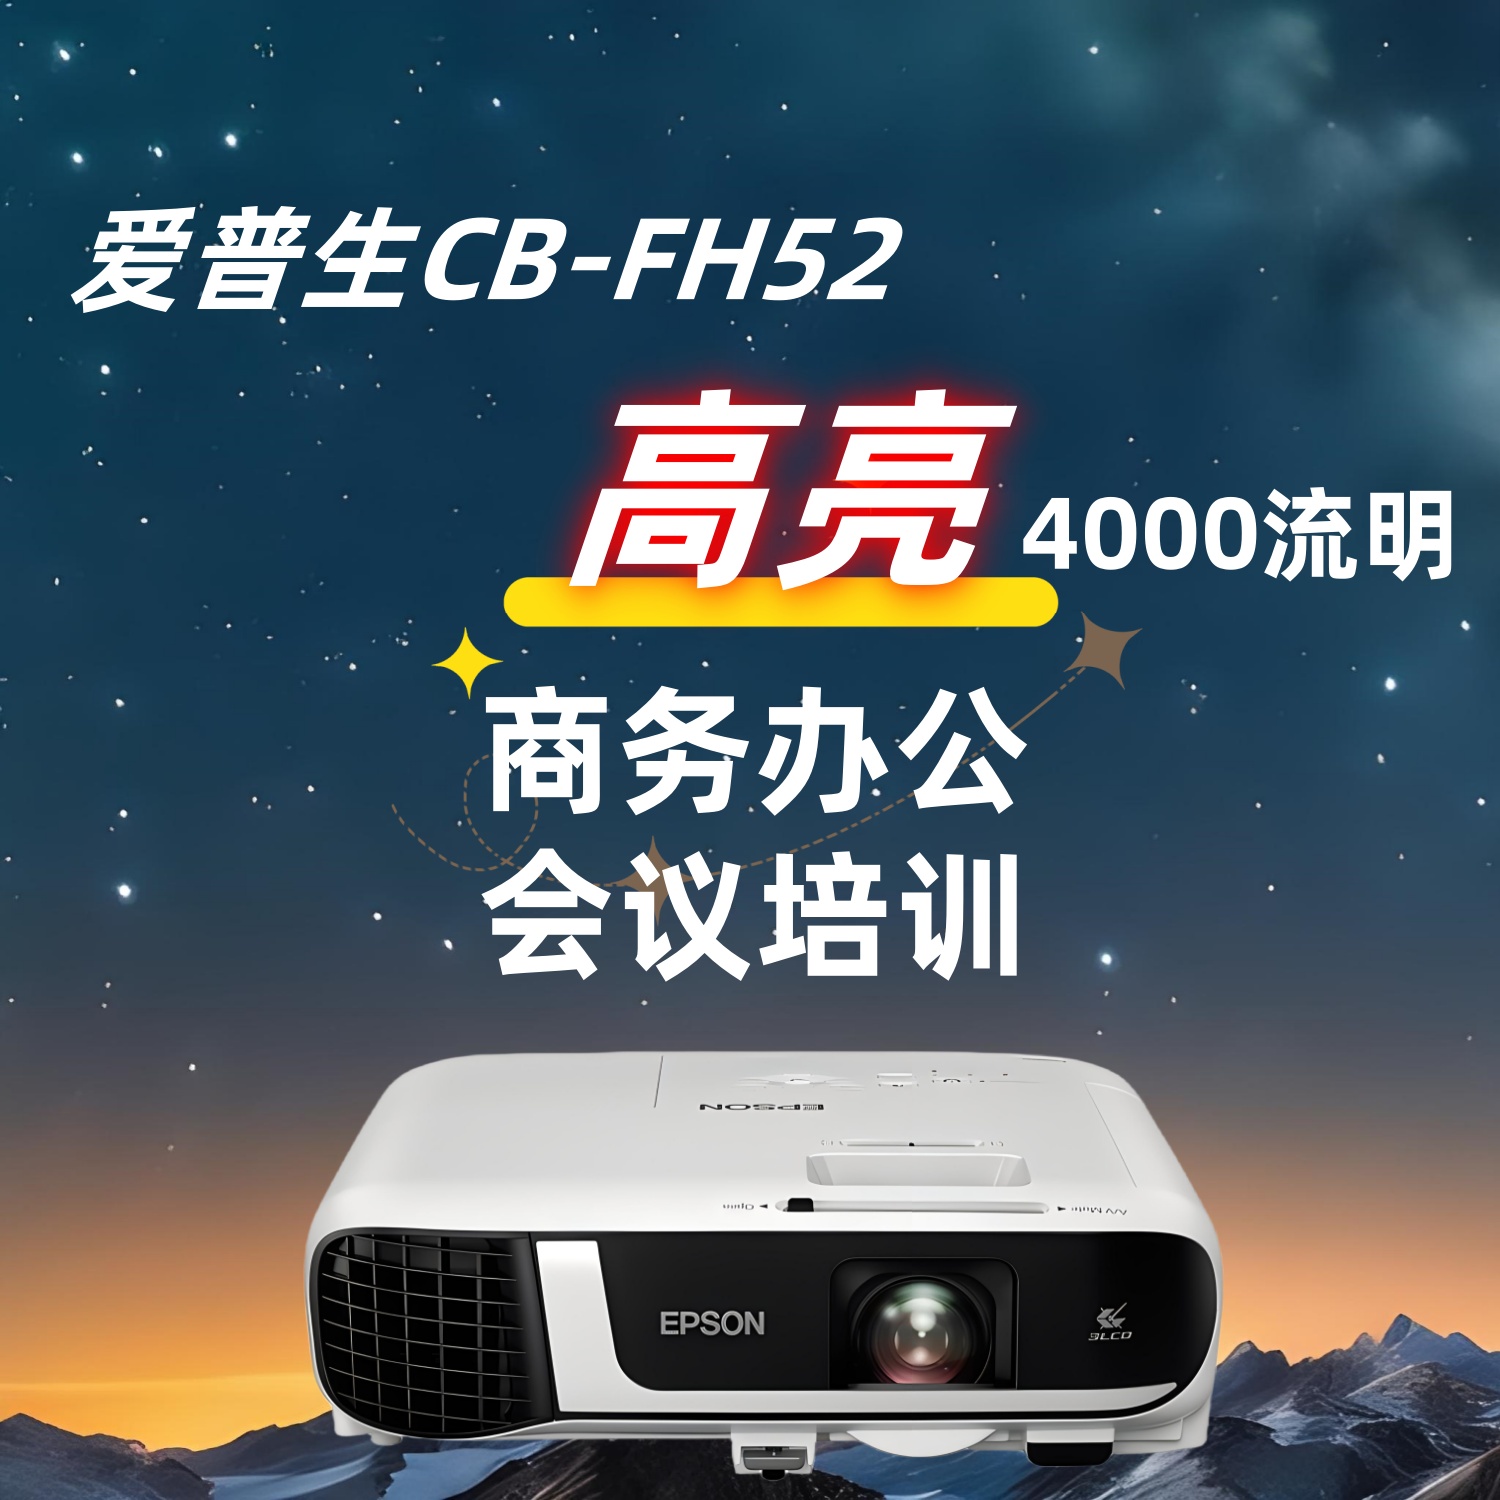 爱普生CB-FH52商用办公会议教学培训高清投影机